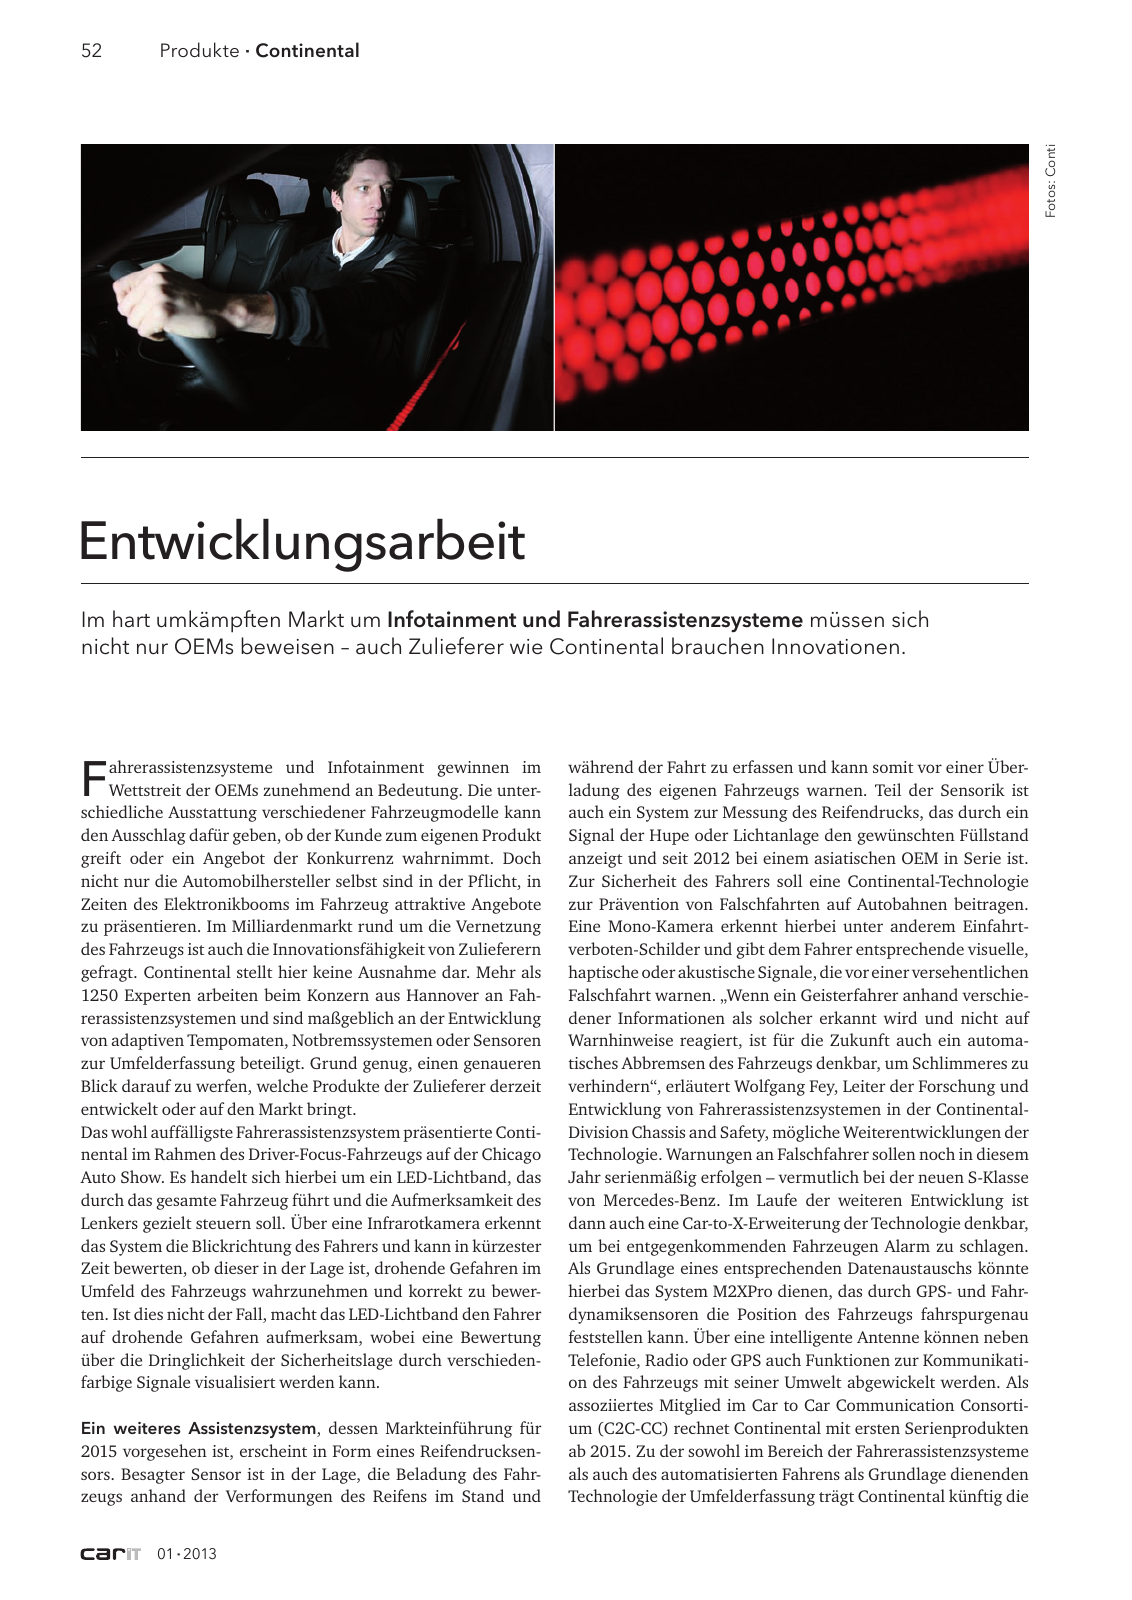 Vorschau carIT 01 2013 Seite 52